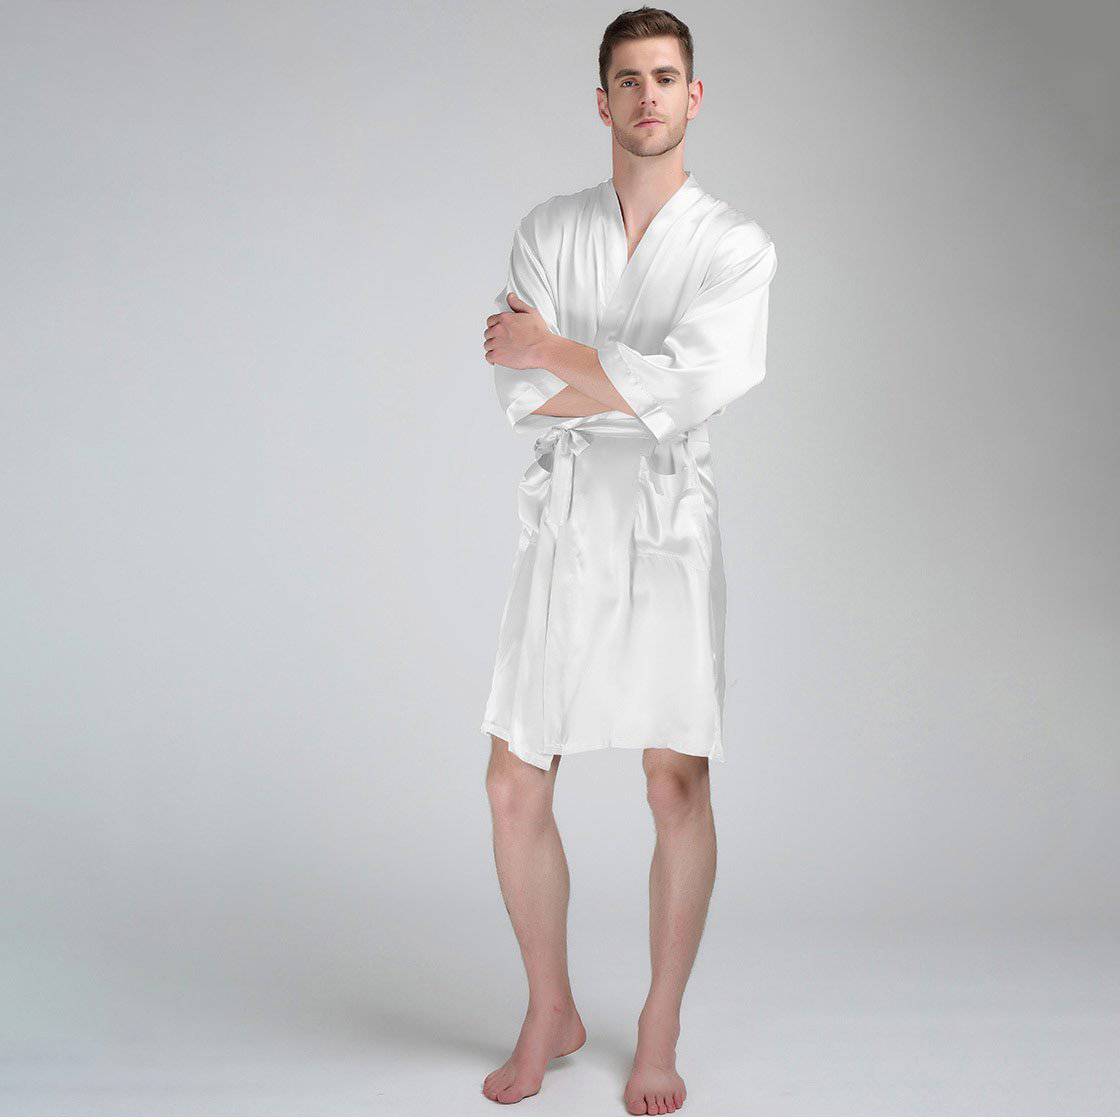 Haseil Men's Luxurious Kimono Robe with Shorts Silk Satin